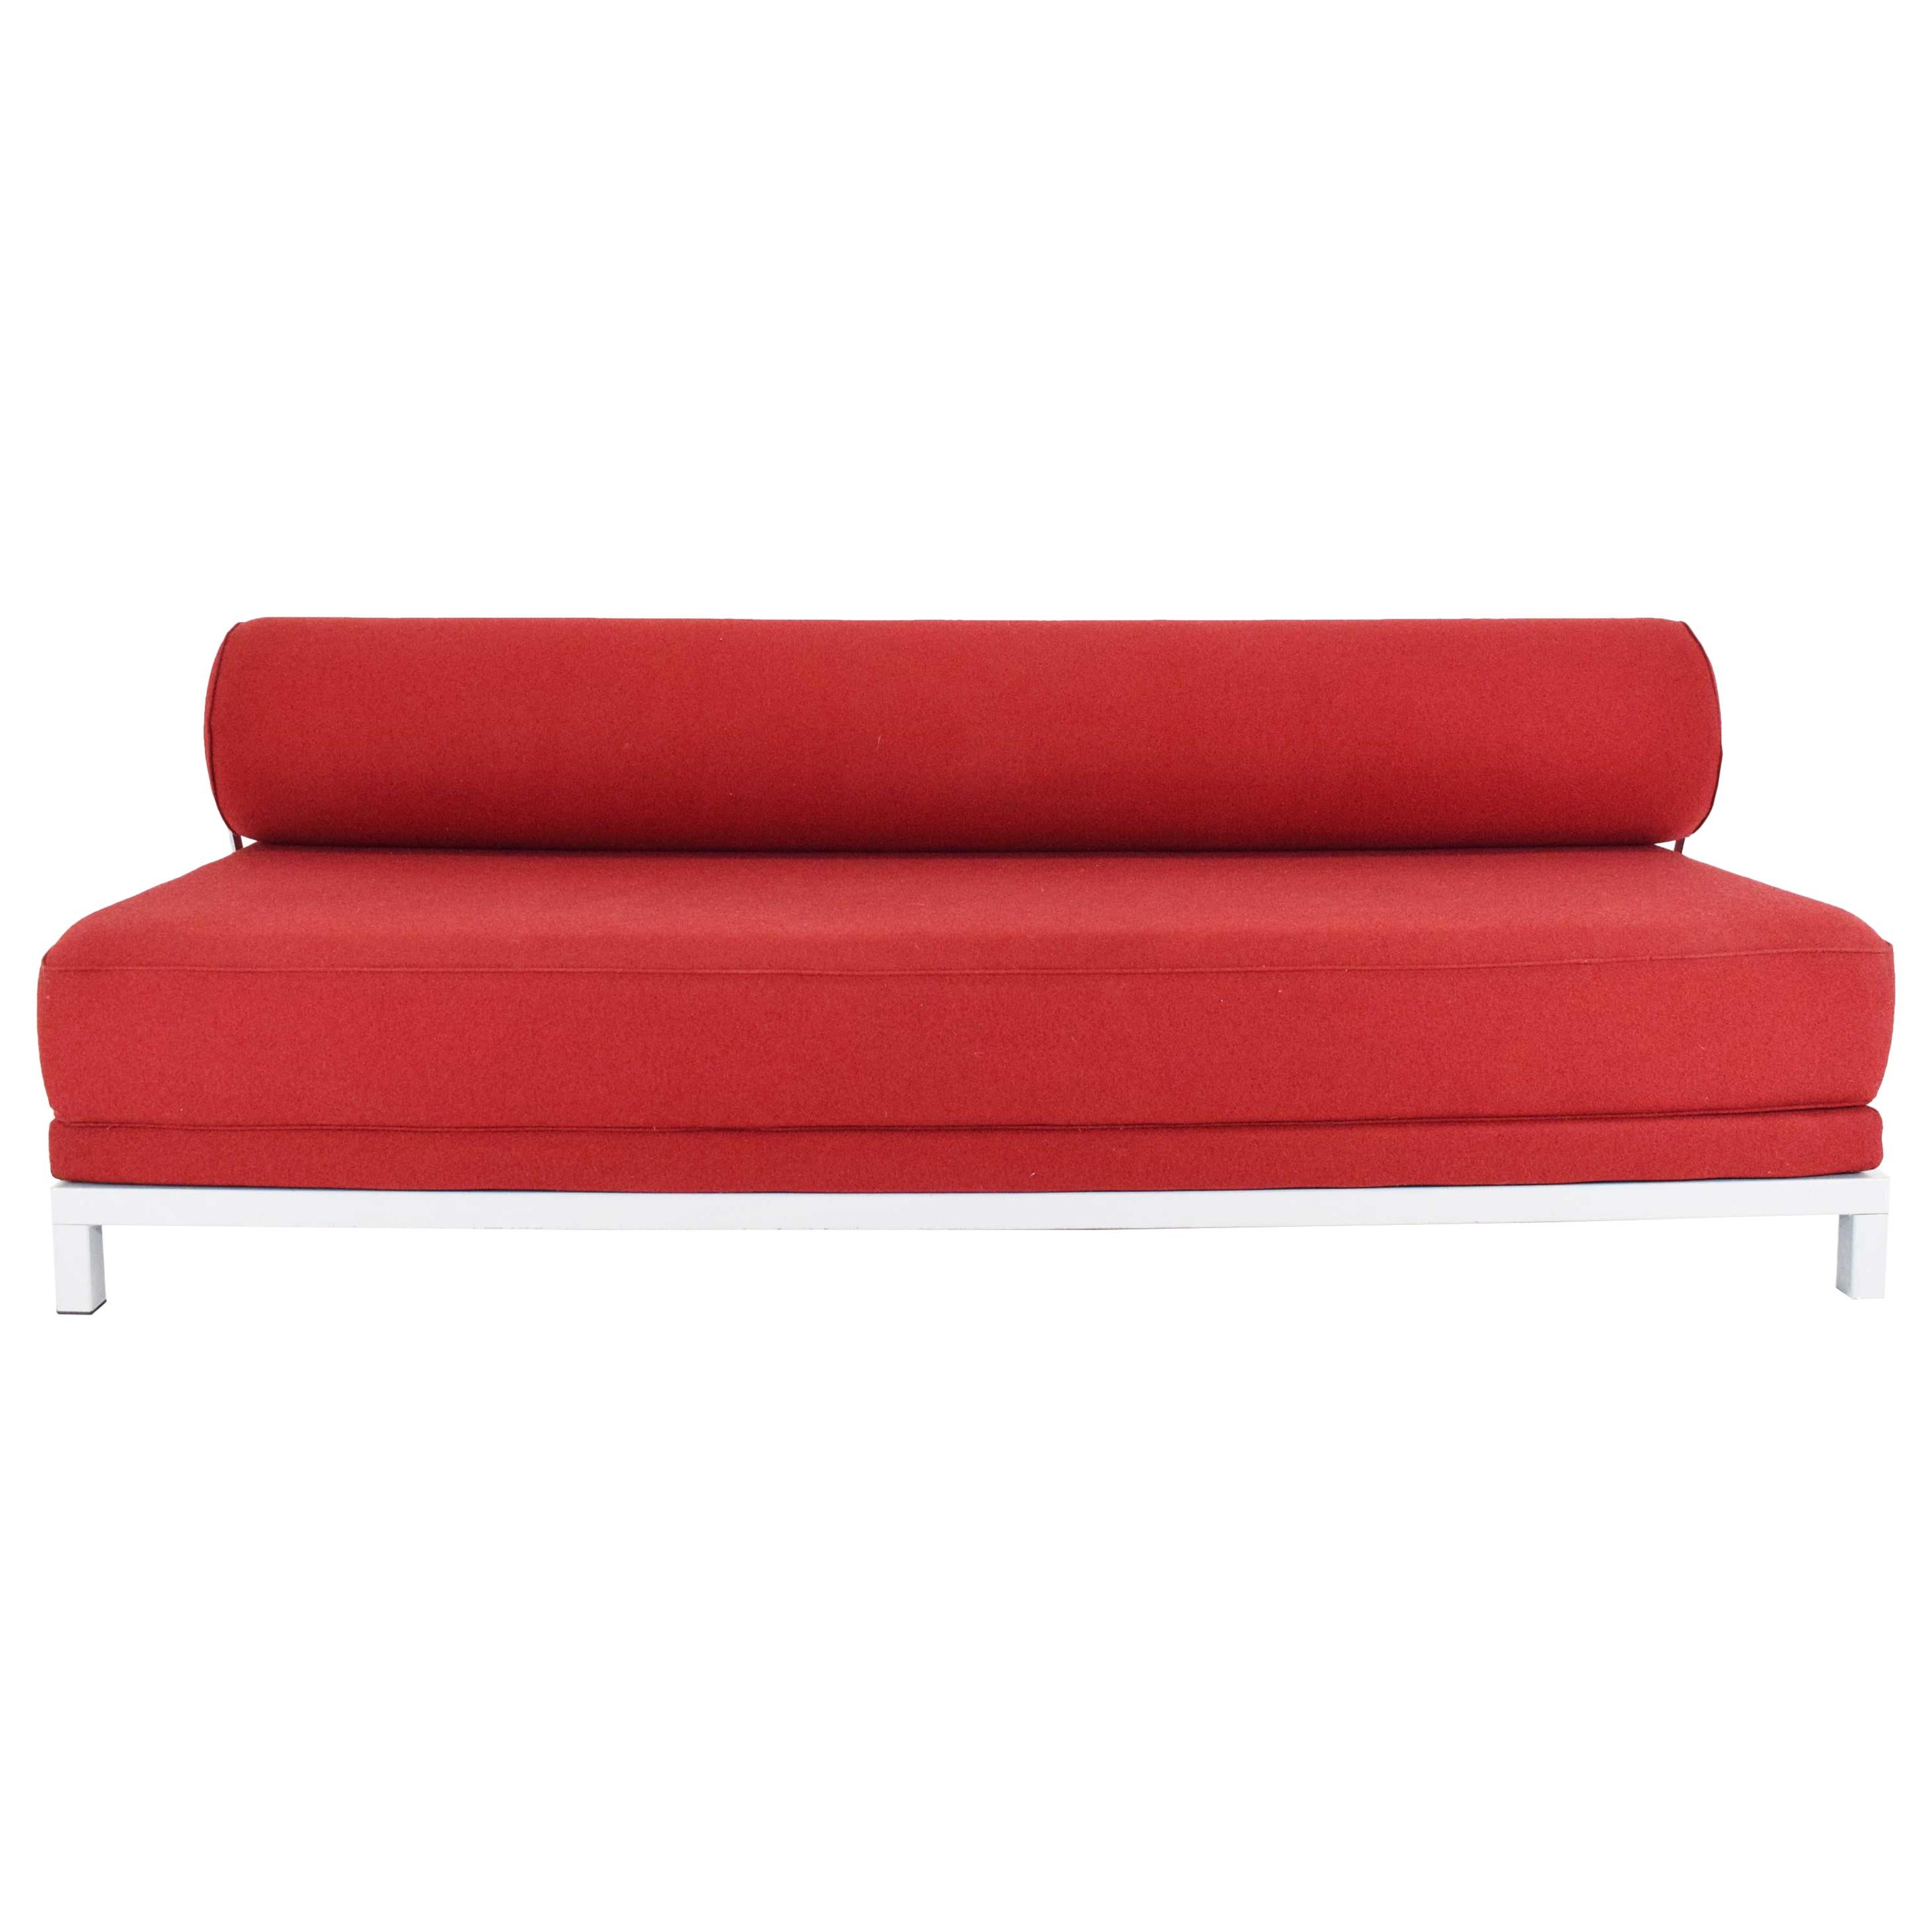 Fleming Busk for Softline Twilight Sleeper Sofa in Red